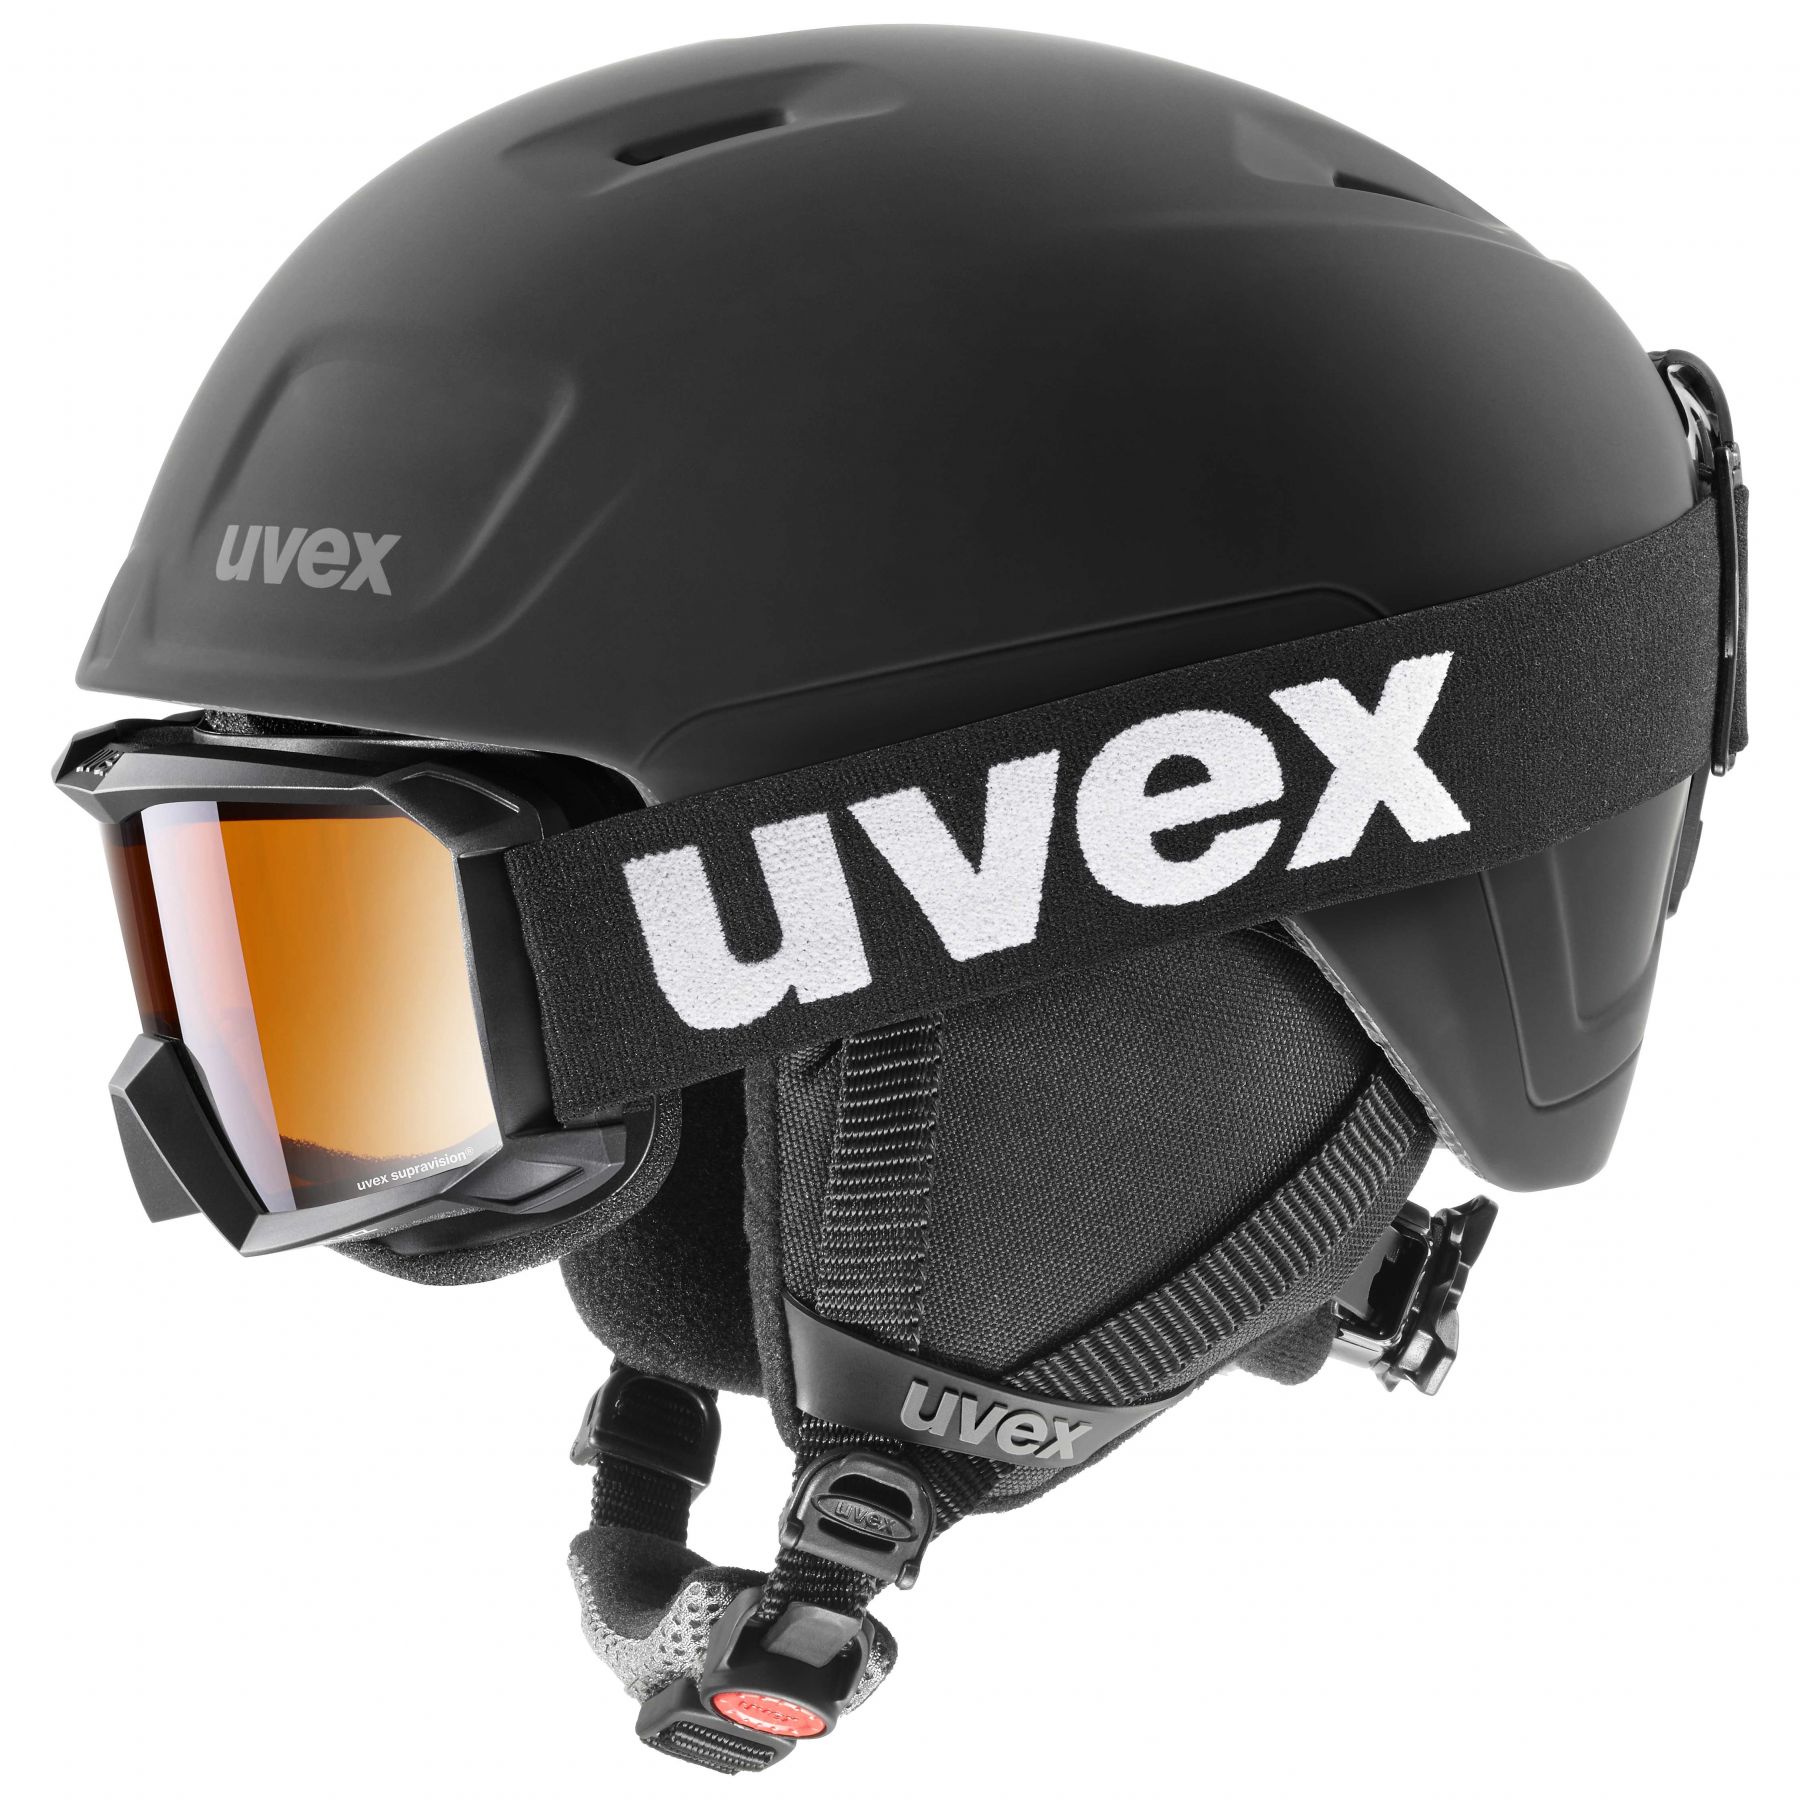 Billede af Uvex Heyya Pro Set, skihjelm + skibrille, junior, sort hos Skisport.dk